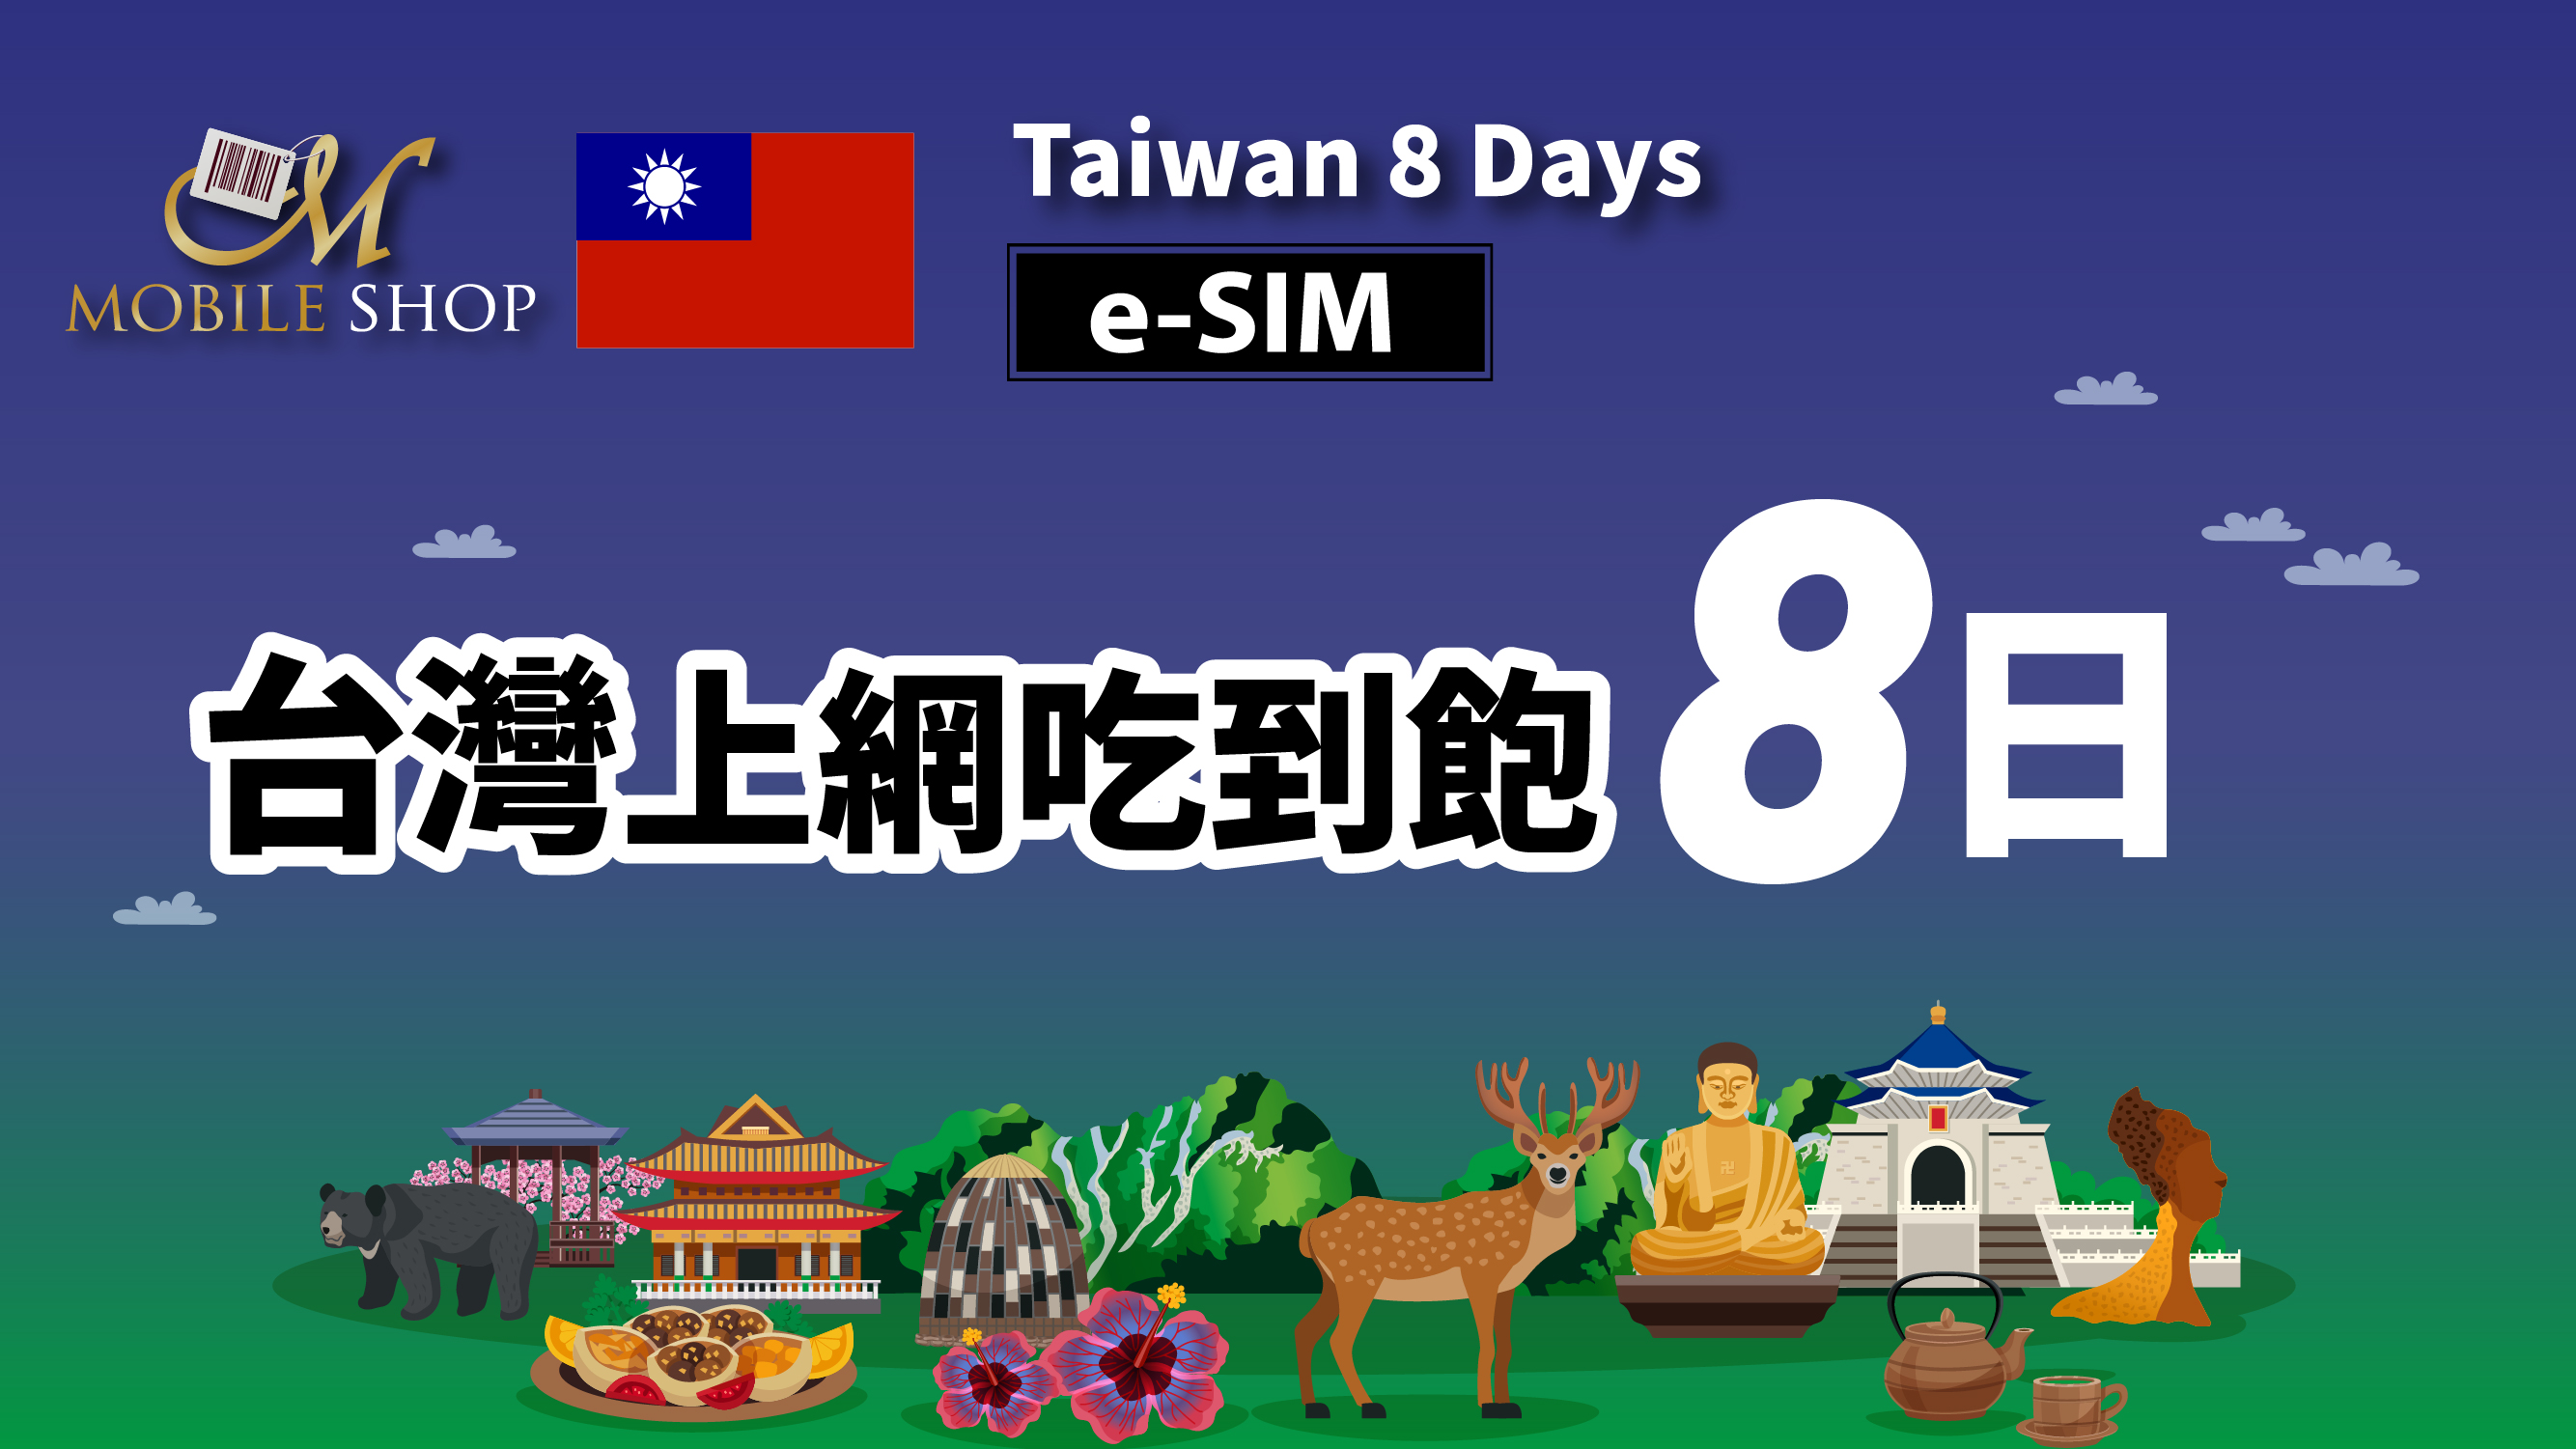 eSIM_Taiwan 8days_6GB unlimited data《on sale》